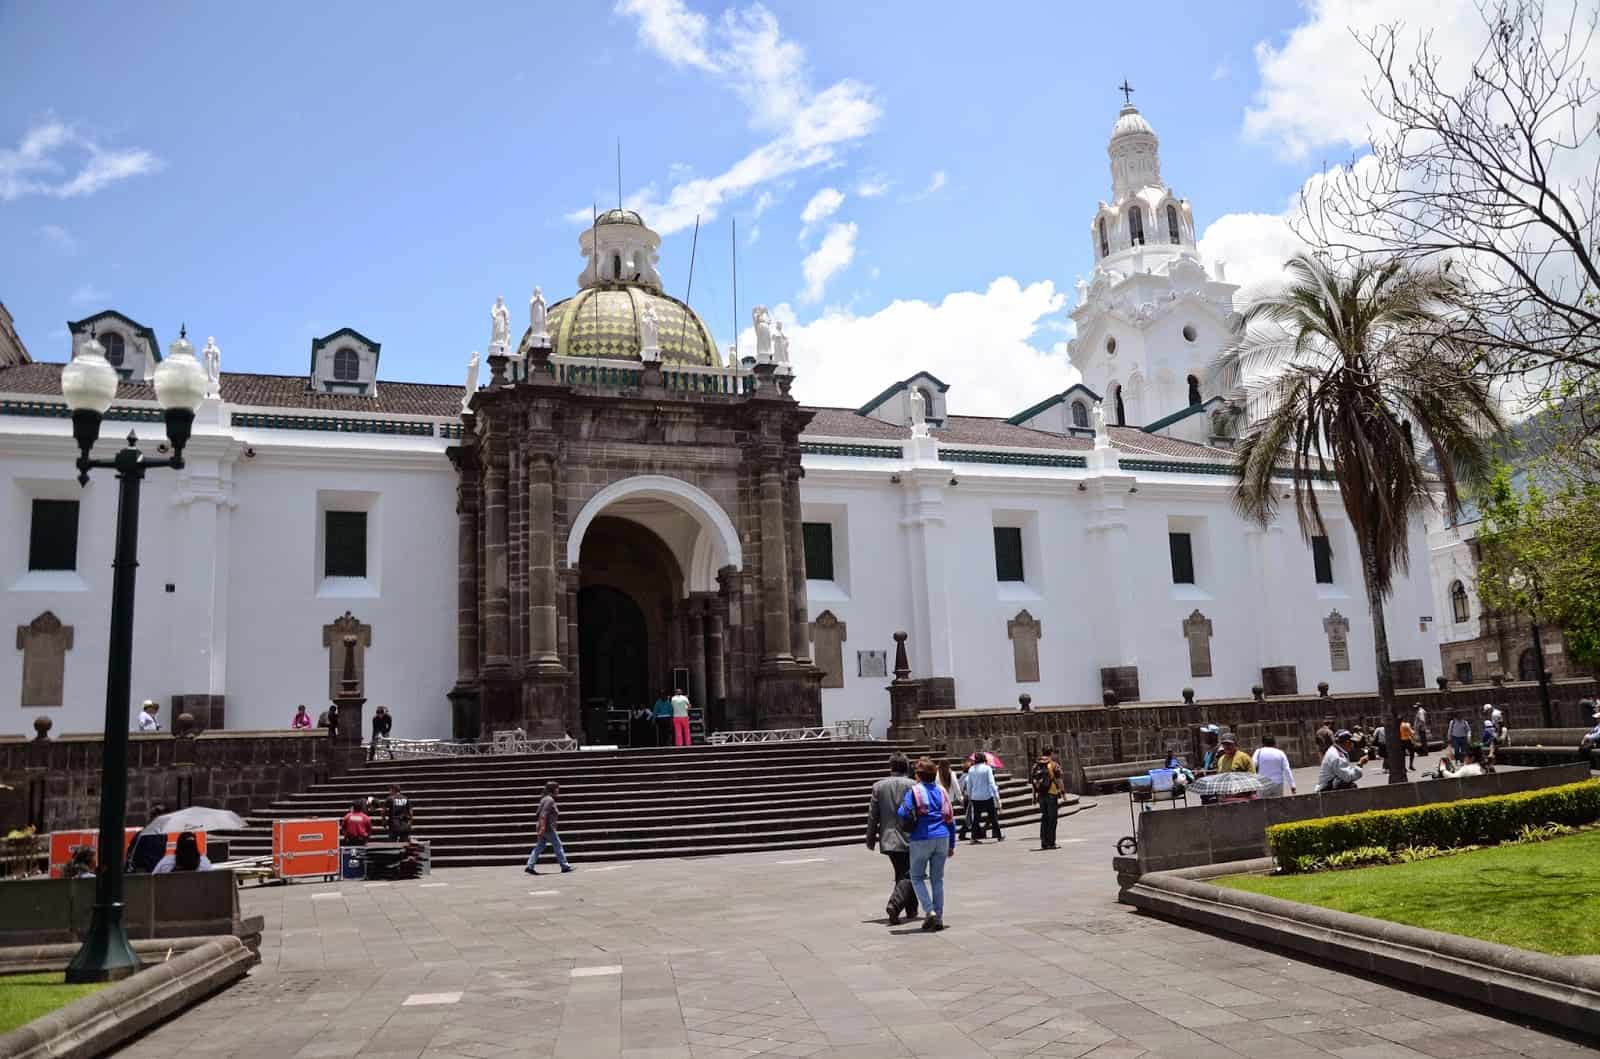 Catedral Metropolitana on Plaza Grande in Quito, Ecuador